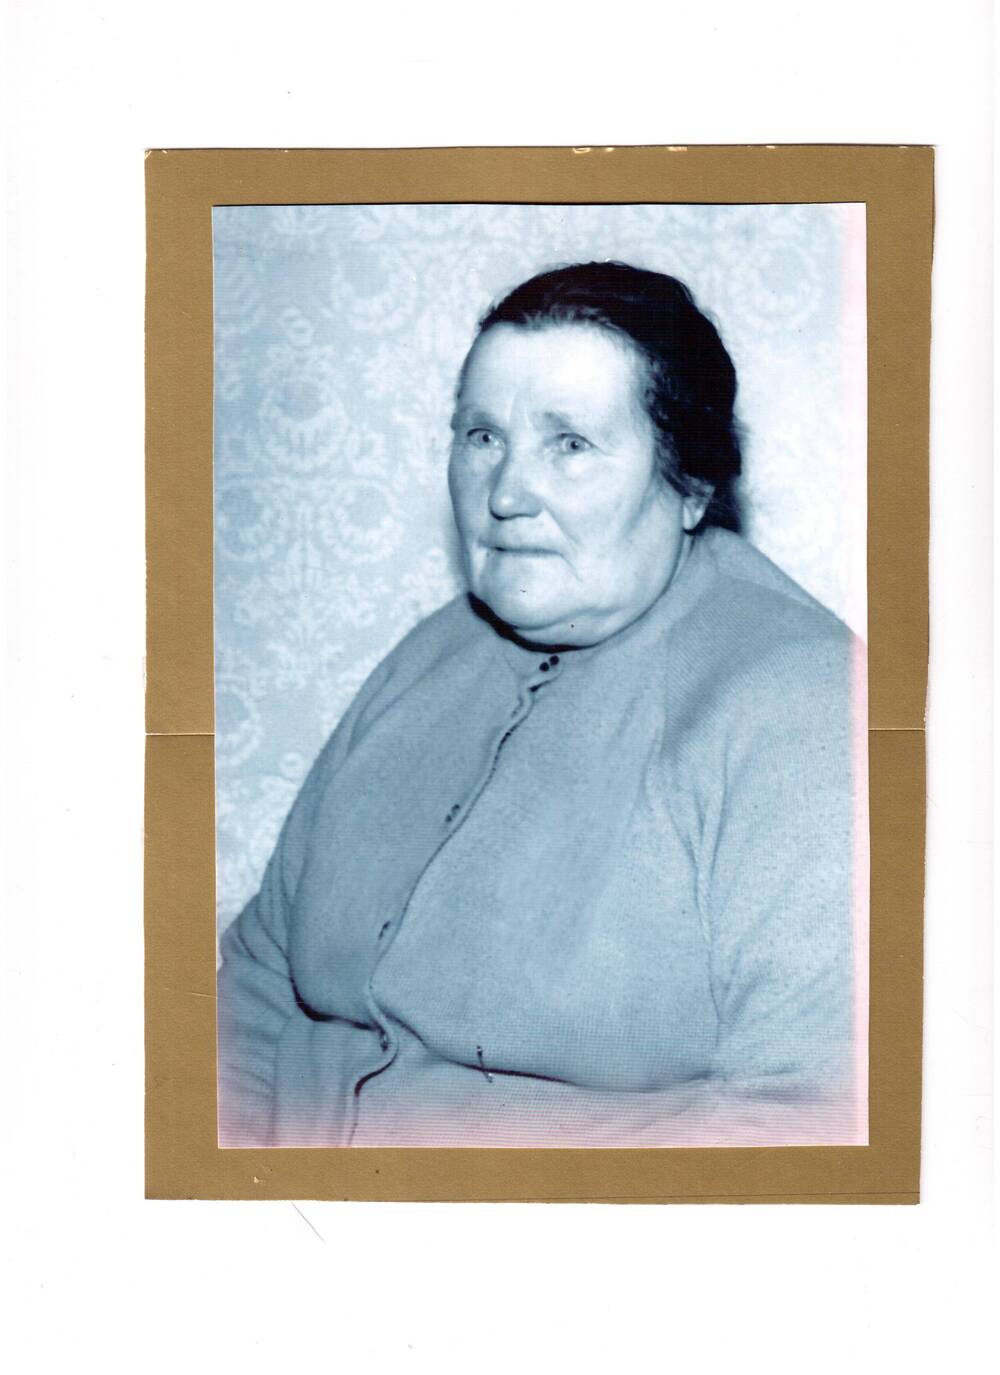 Фотография. Прасковья Яковлевна Кулик (1908-1986г.г.),  хозяйка дома, в котором Зоя Космодемьянская провела последнюю ночь перед казнью.